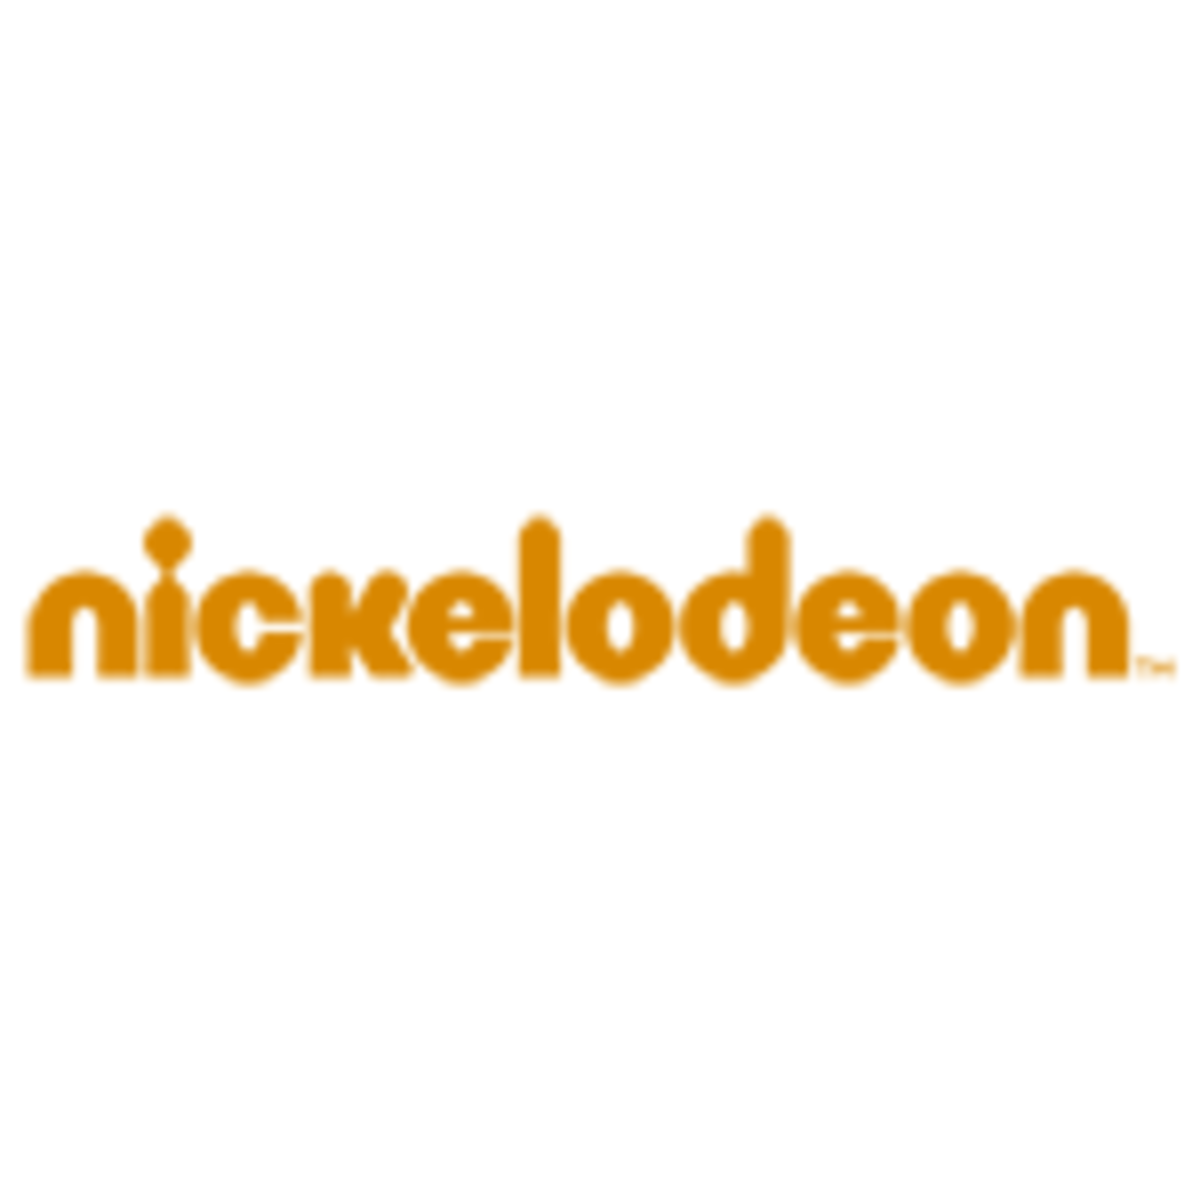 Comment regarder Nickelodeon en replay ?